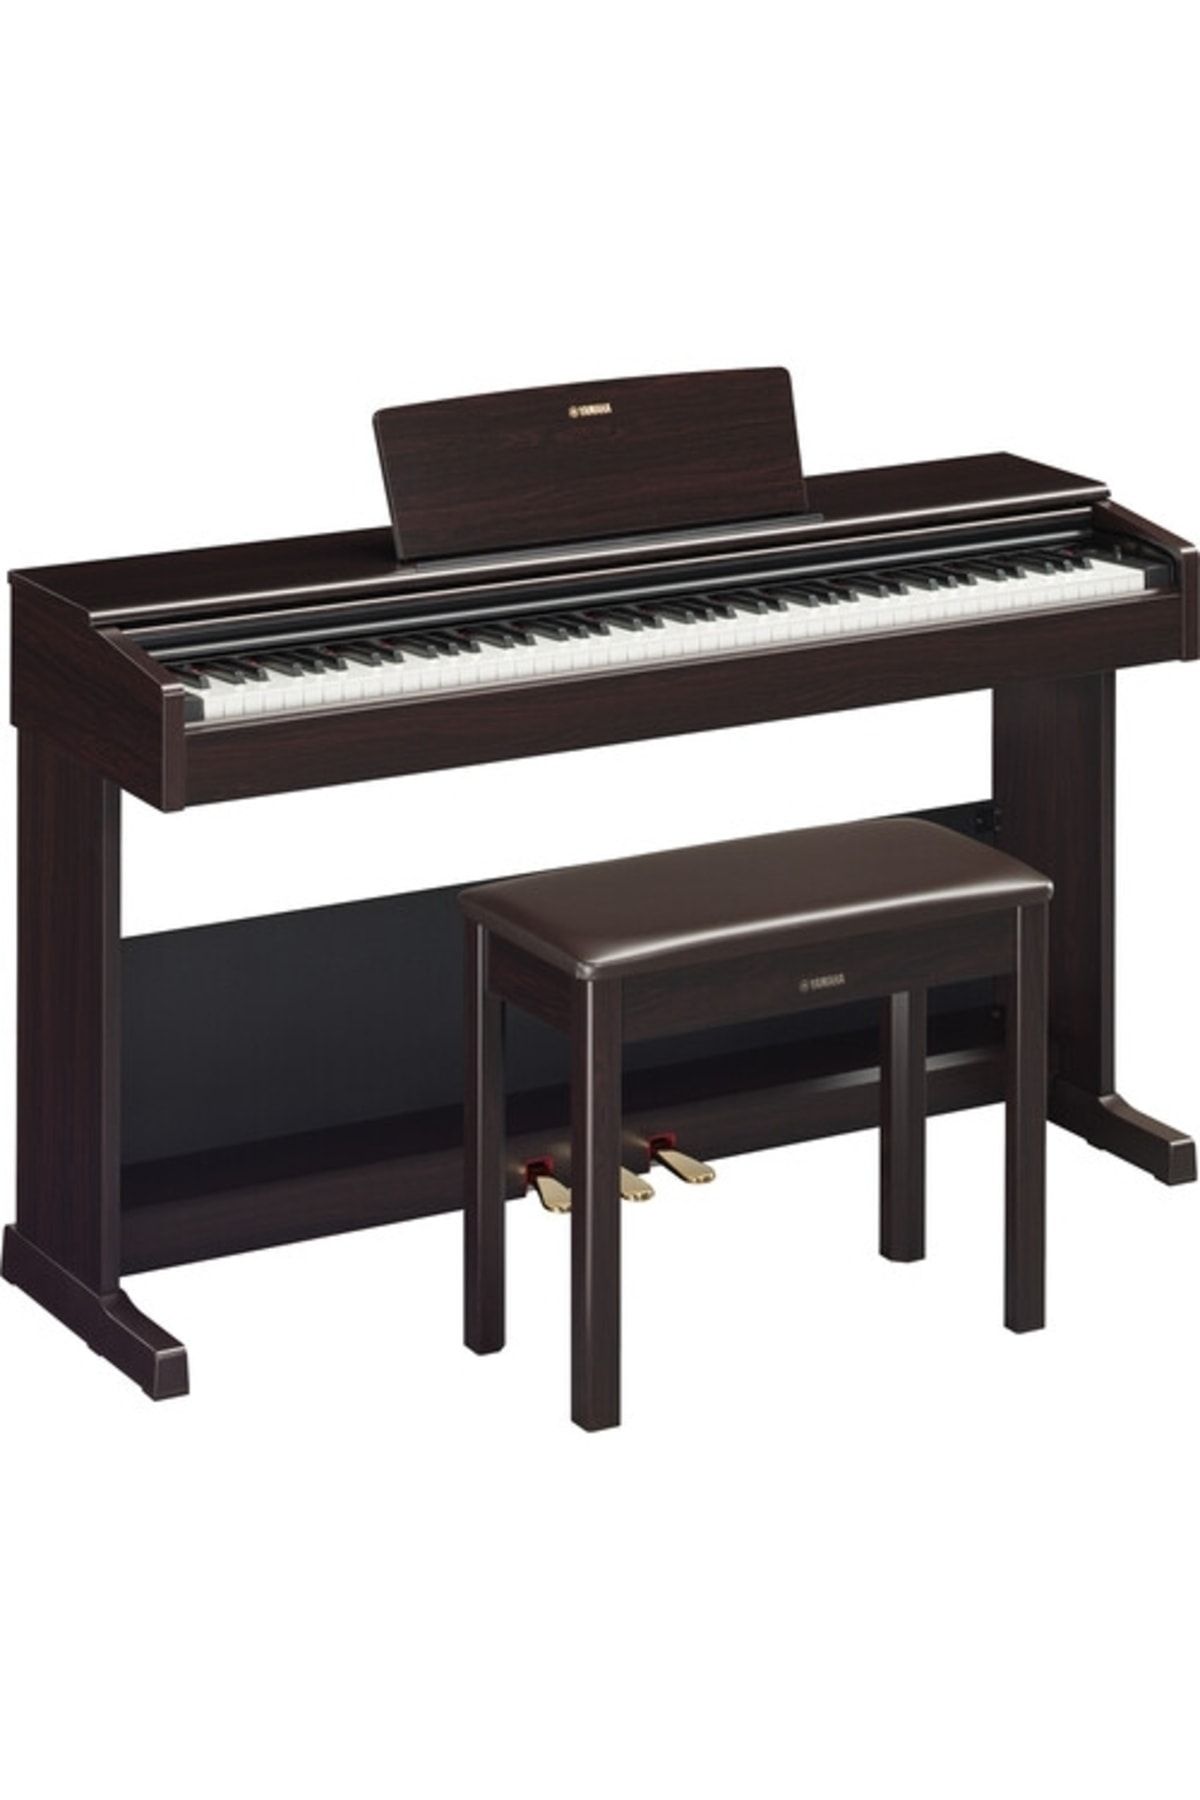 Yamaha Arıus Ydp 105r Dijital Piyano gülağacı